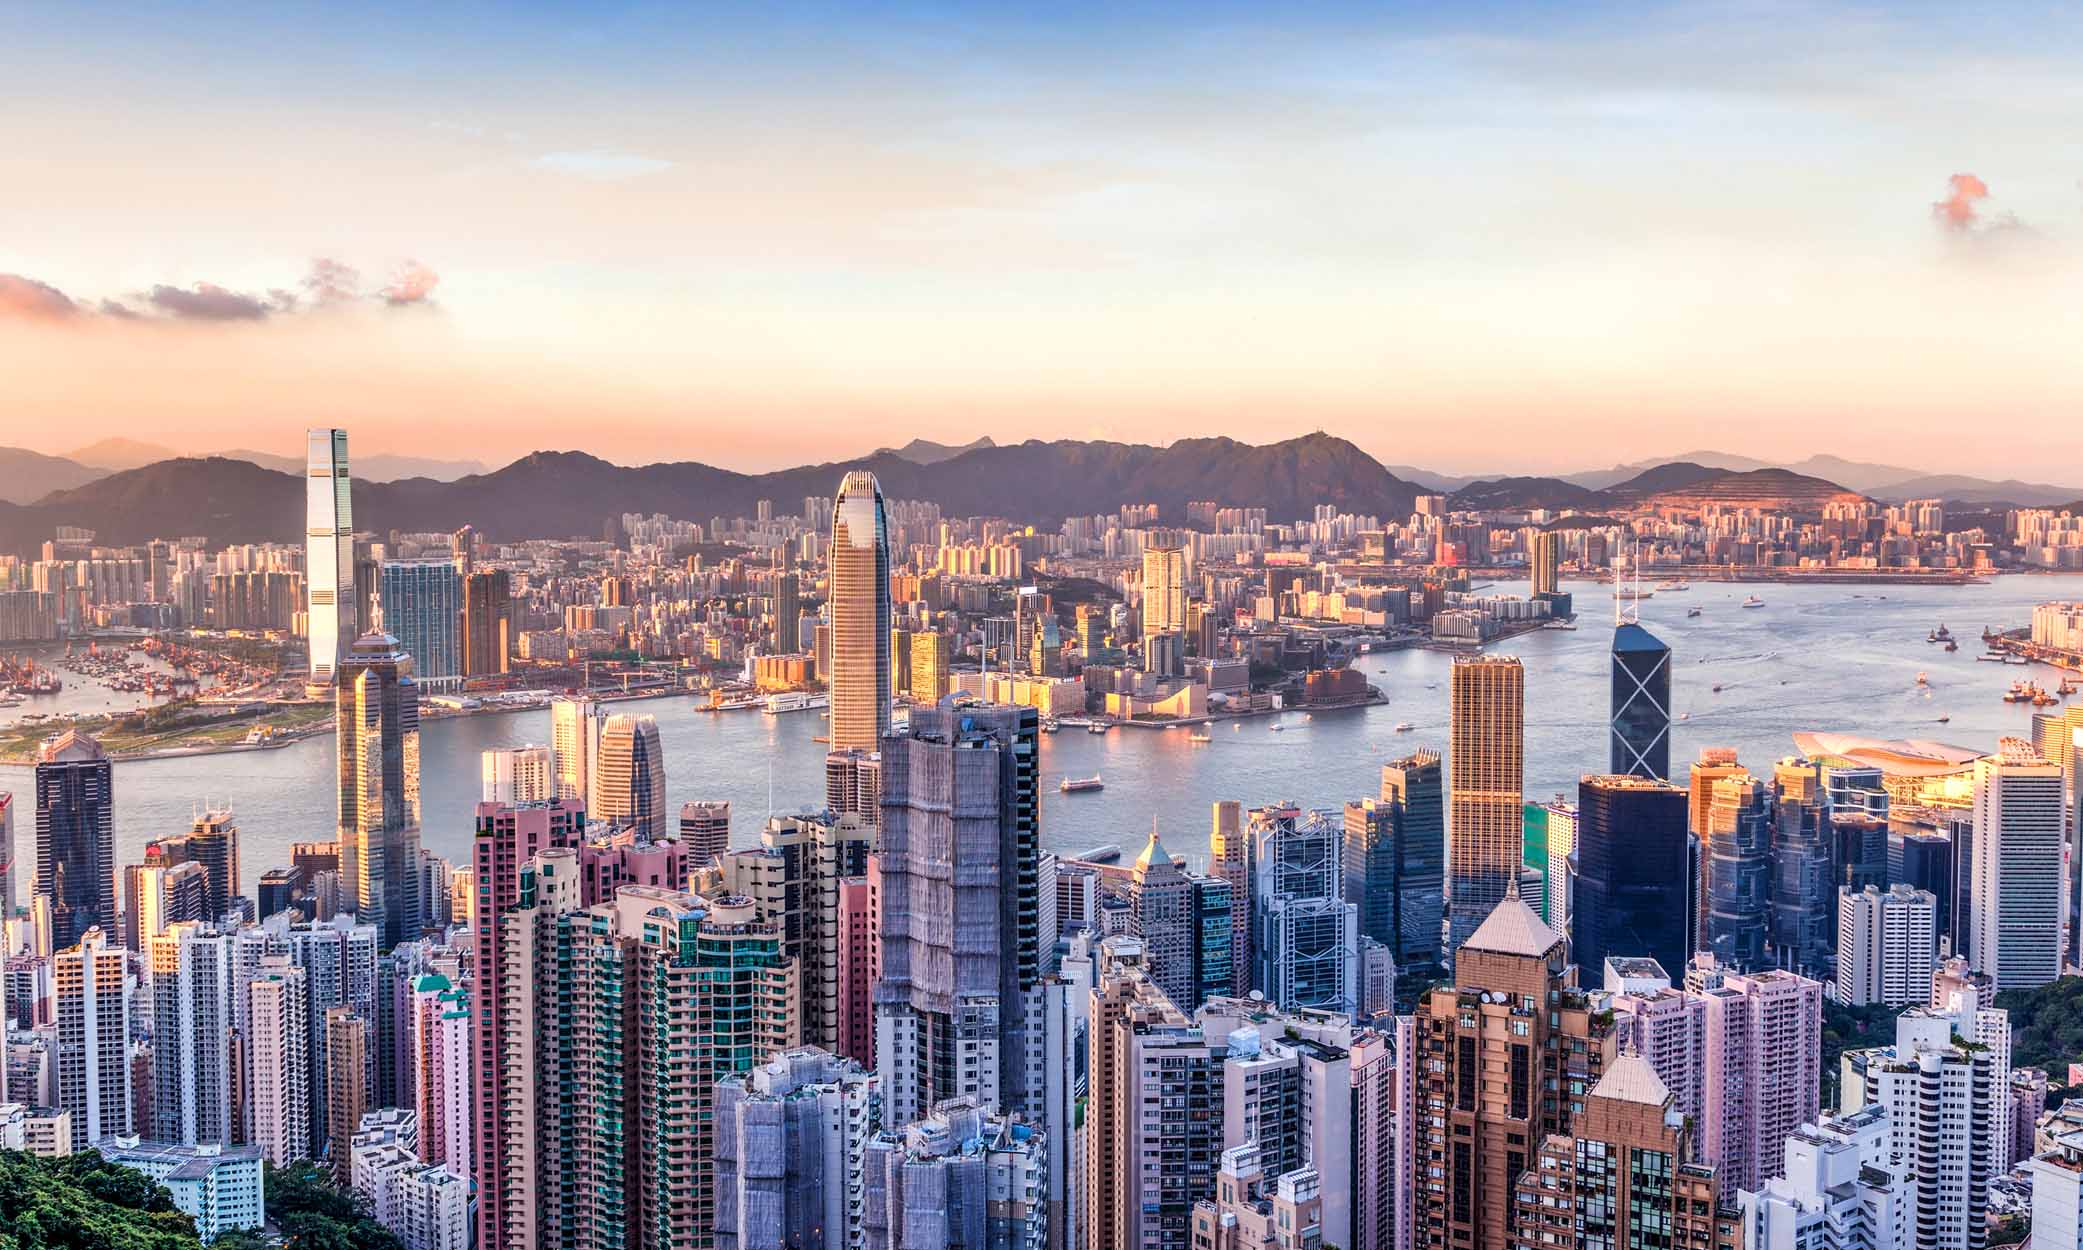 Saiba mais sobre o que está acontecendo em Hong Kong com o Artigo 23.